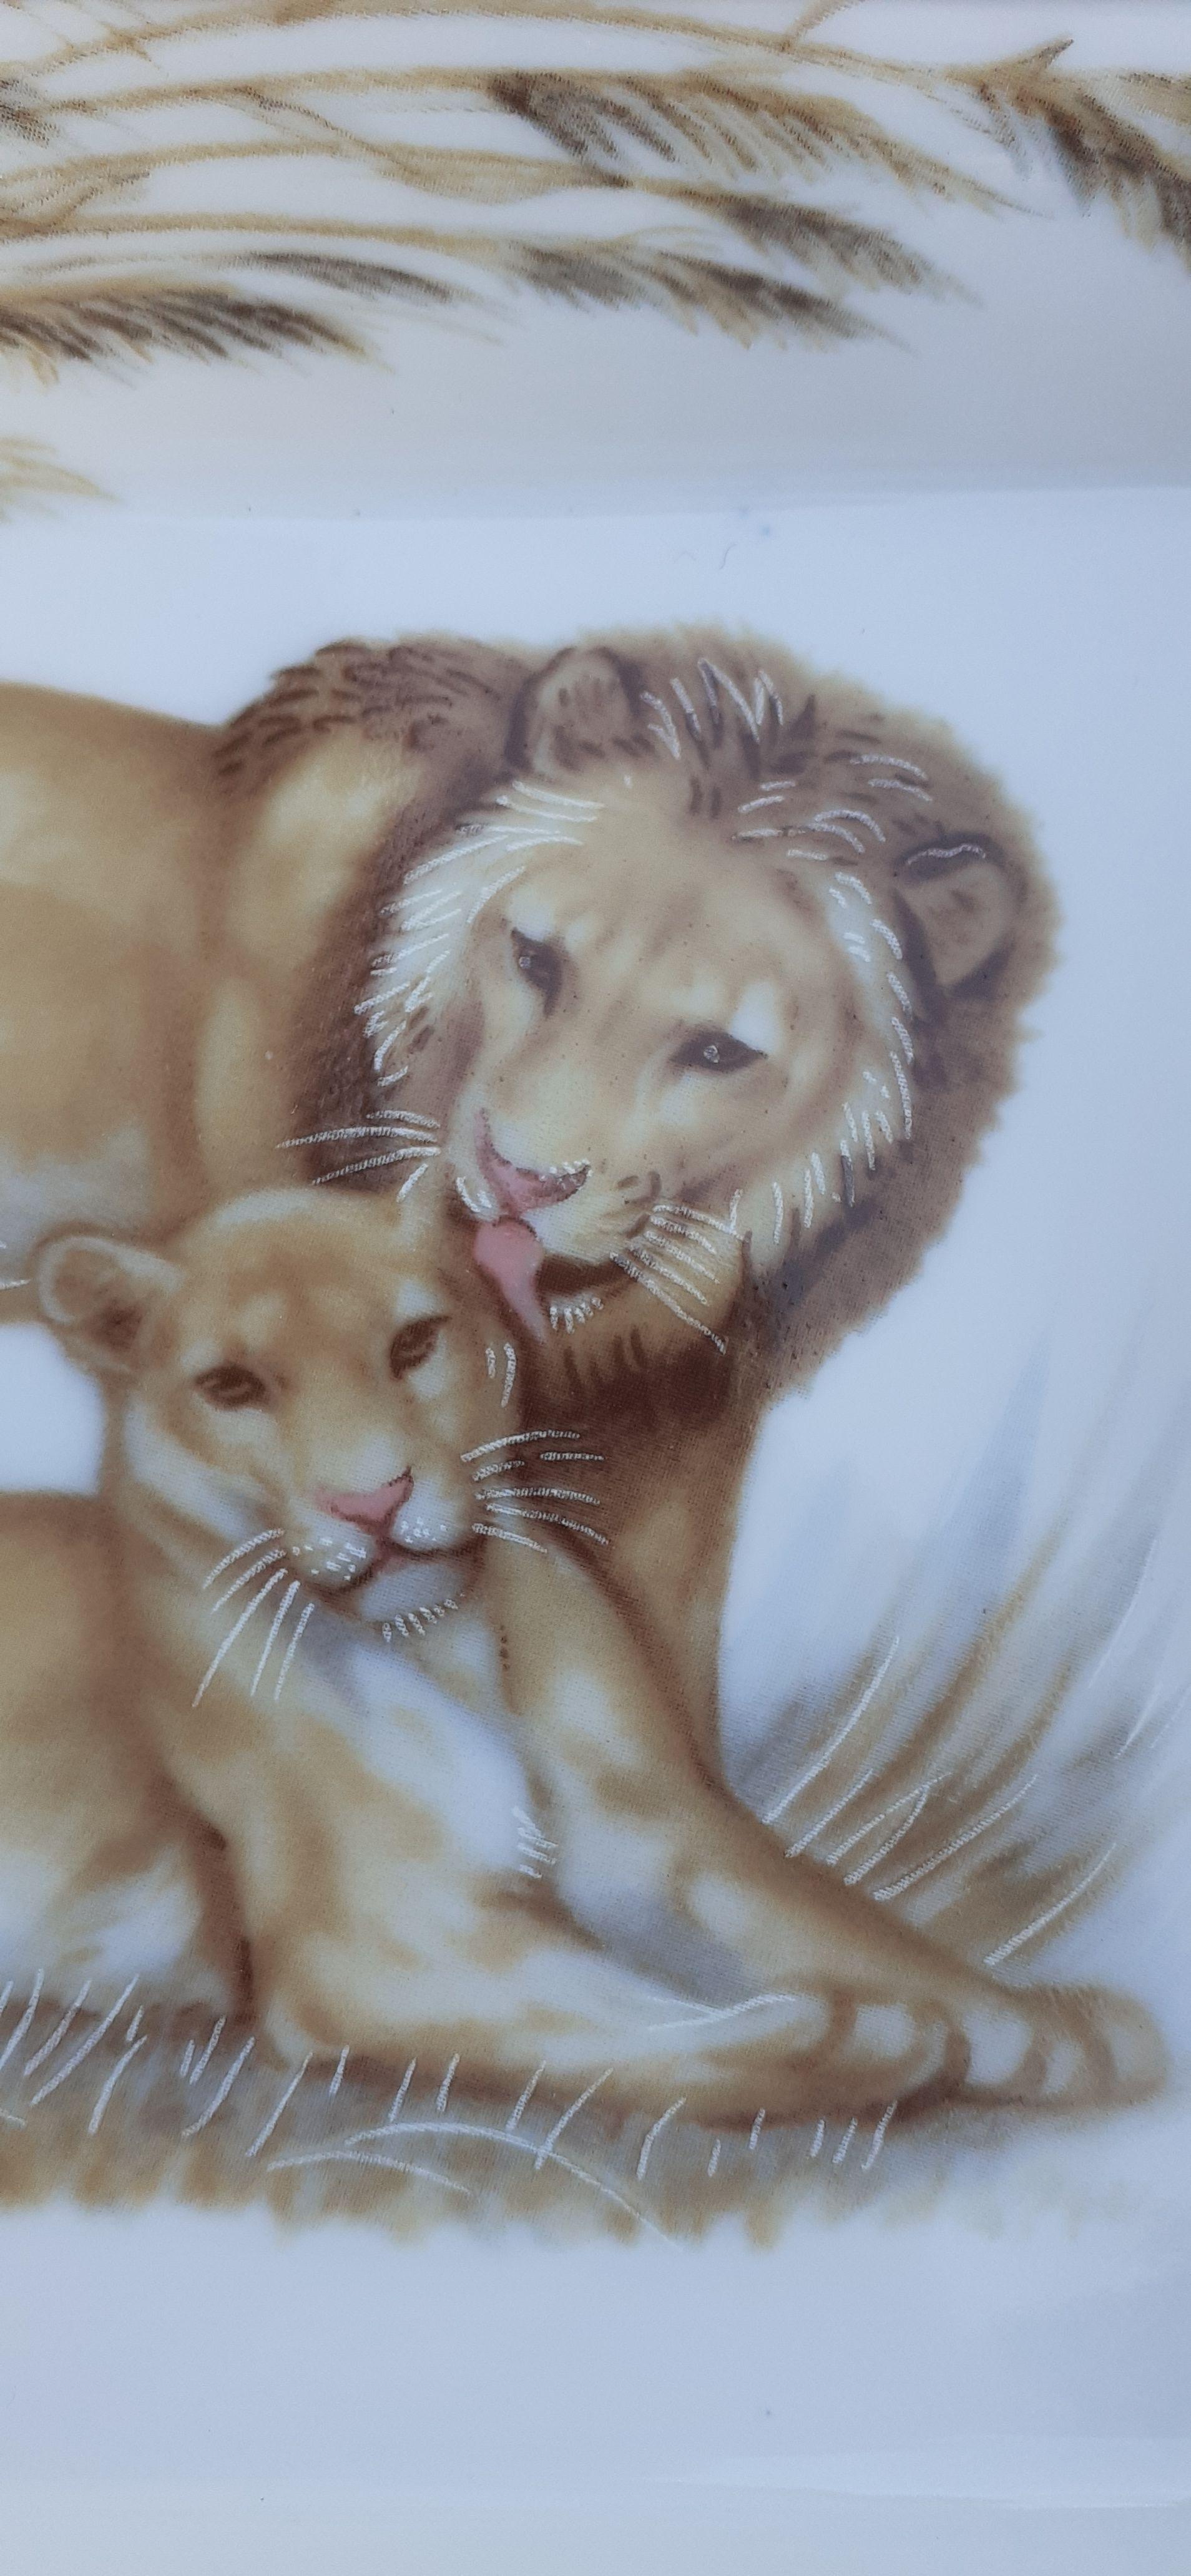 Magnifique Cendrier Authentique Hermès

Imprimer : lion et lionne dans la savane

Cendrier 